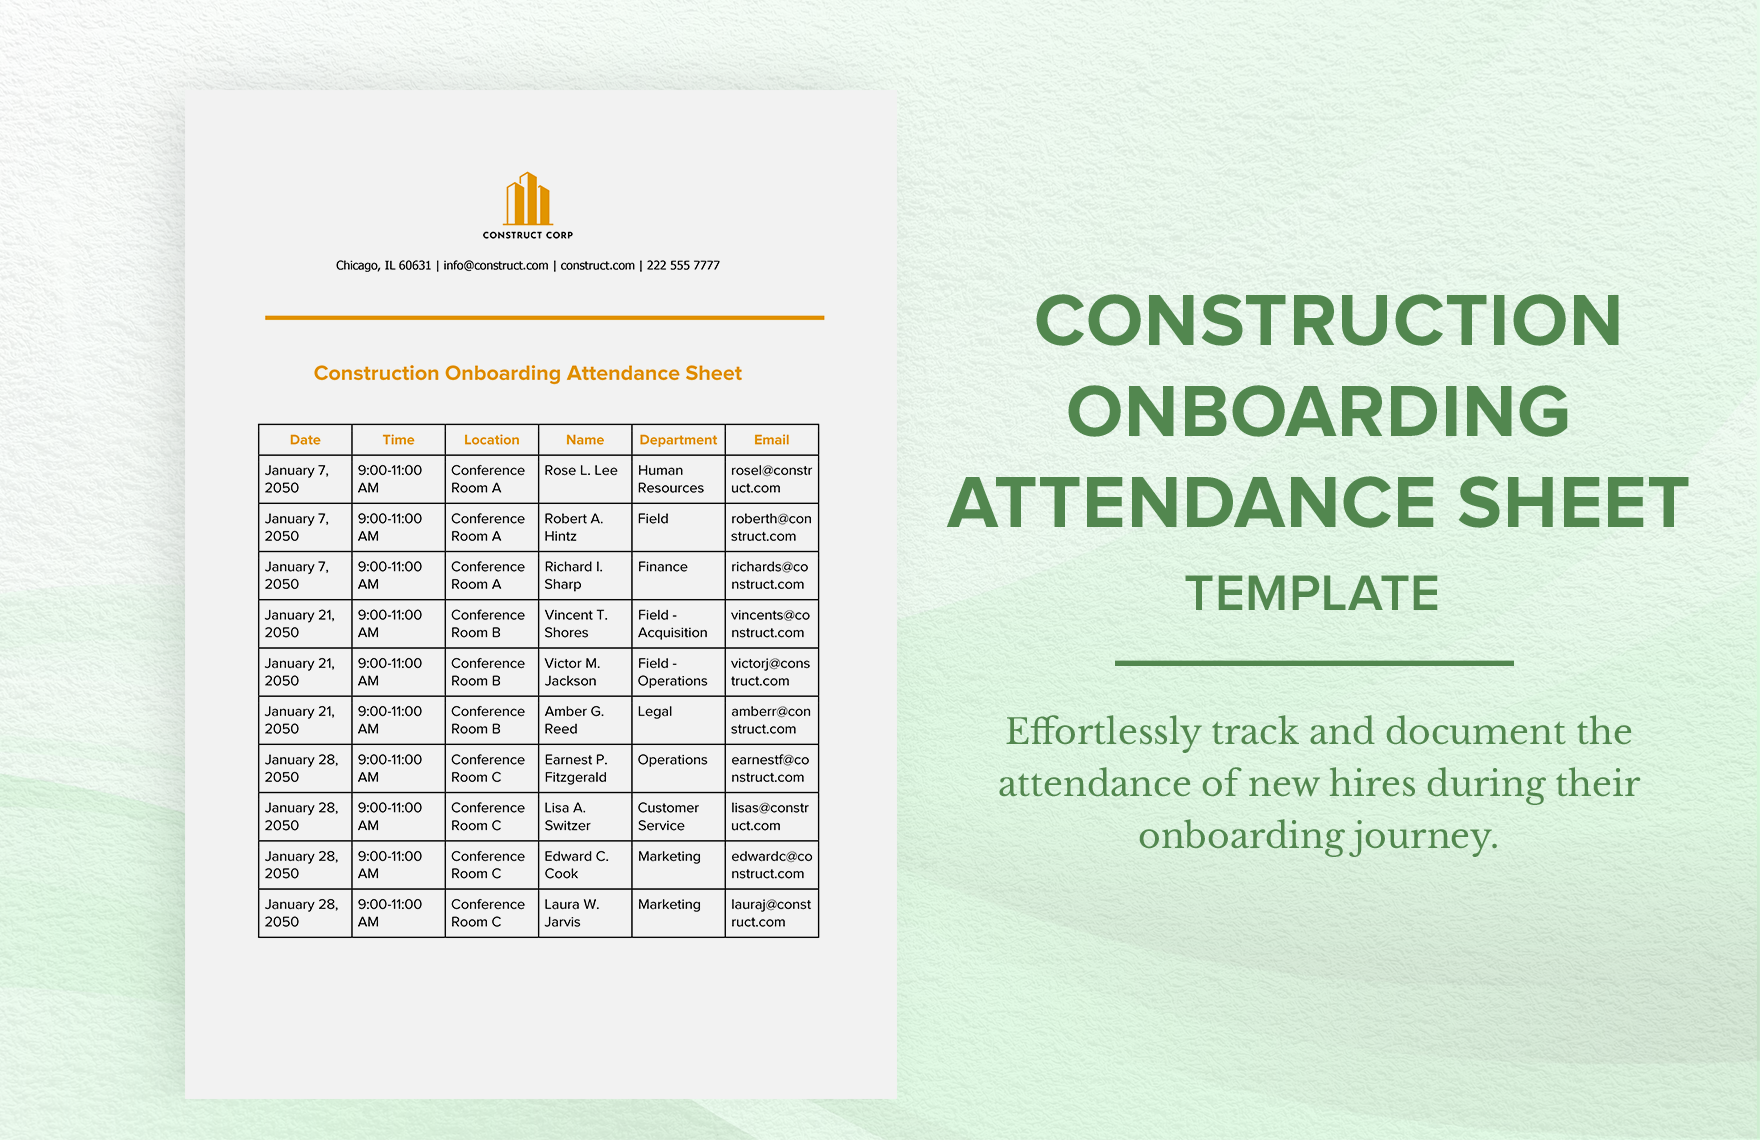 Construction Onboarding Attendance Sheet Template